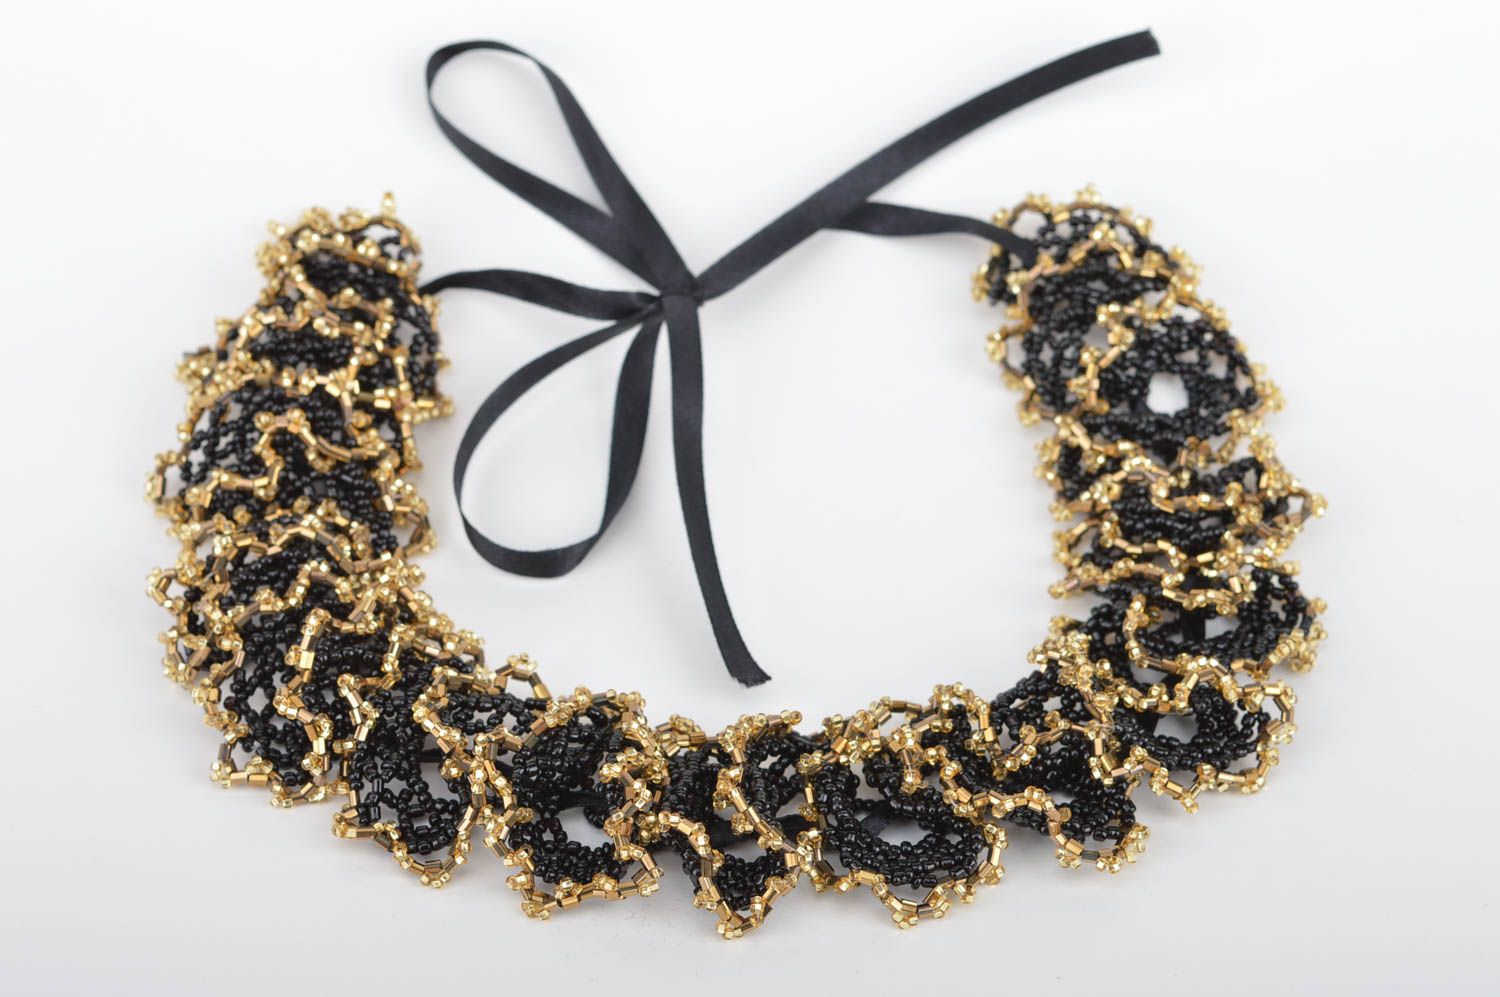 Ожерелье из бисера огалала черное с золотистым воздушное красивое ручной работы фото 5